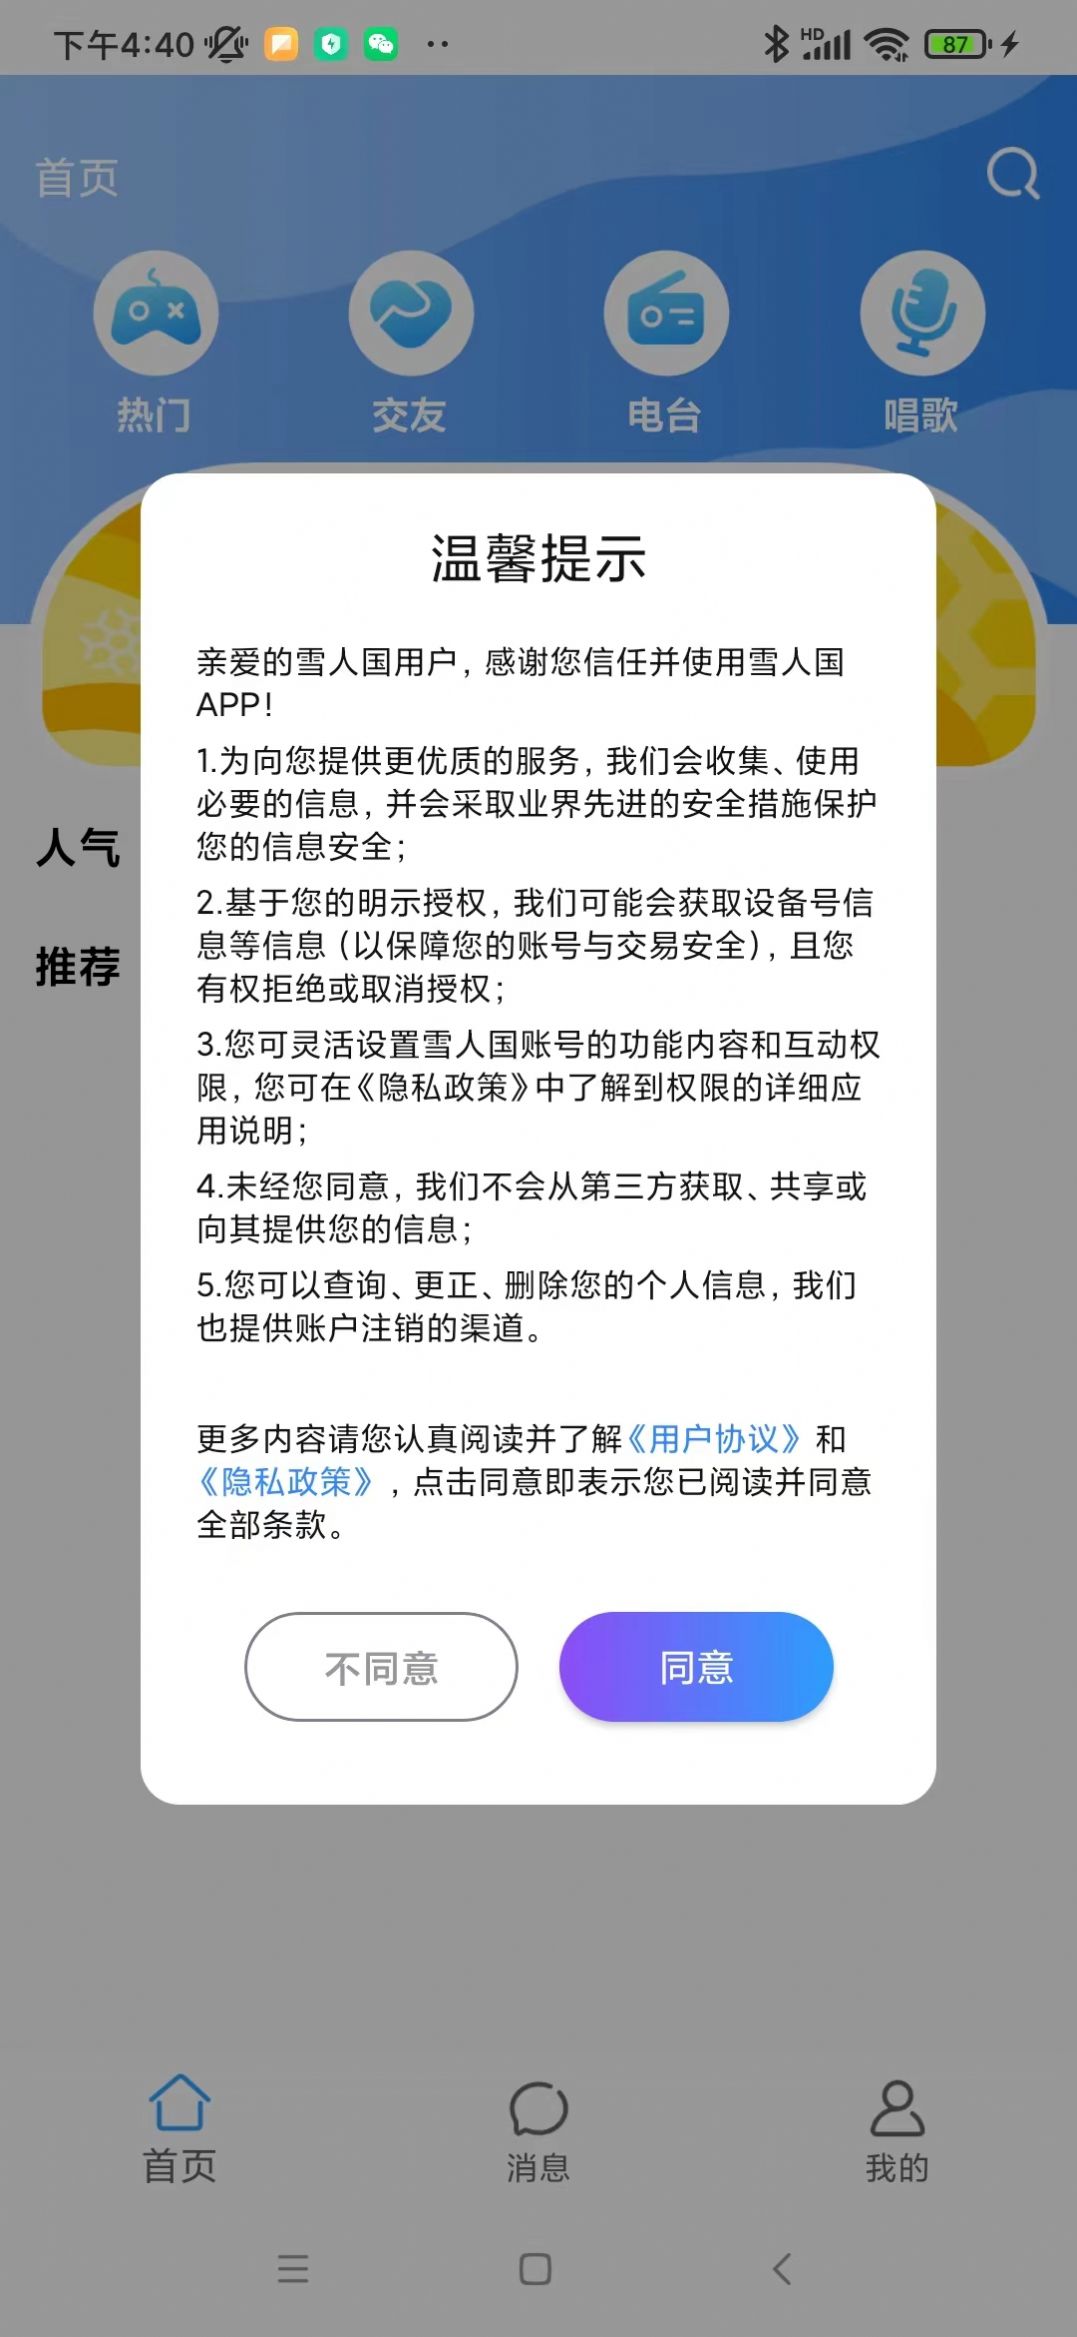 雪人国交友平台app官方图片1